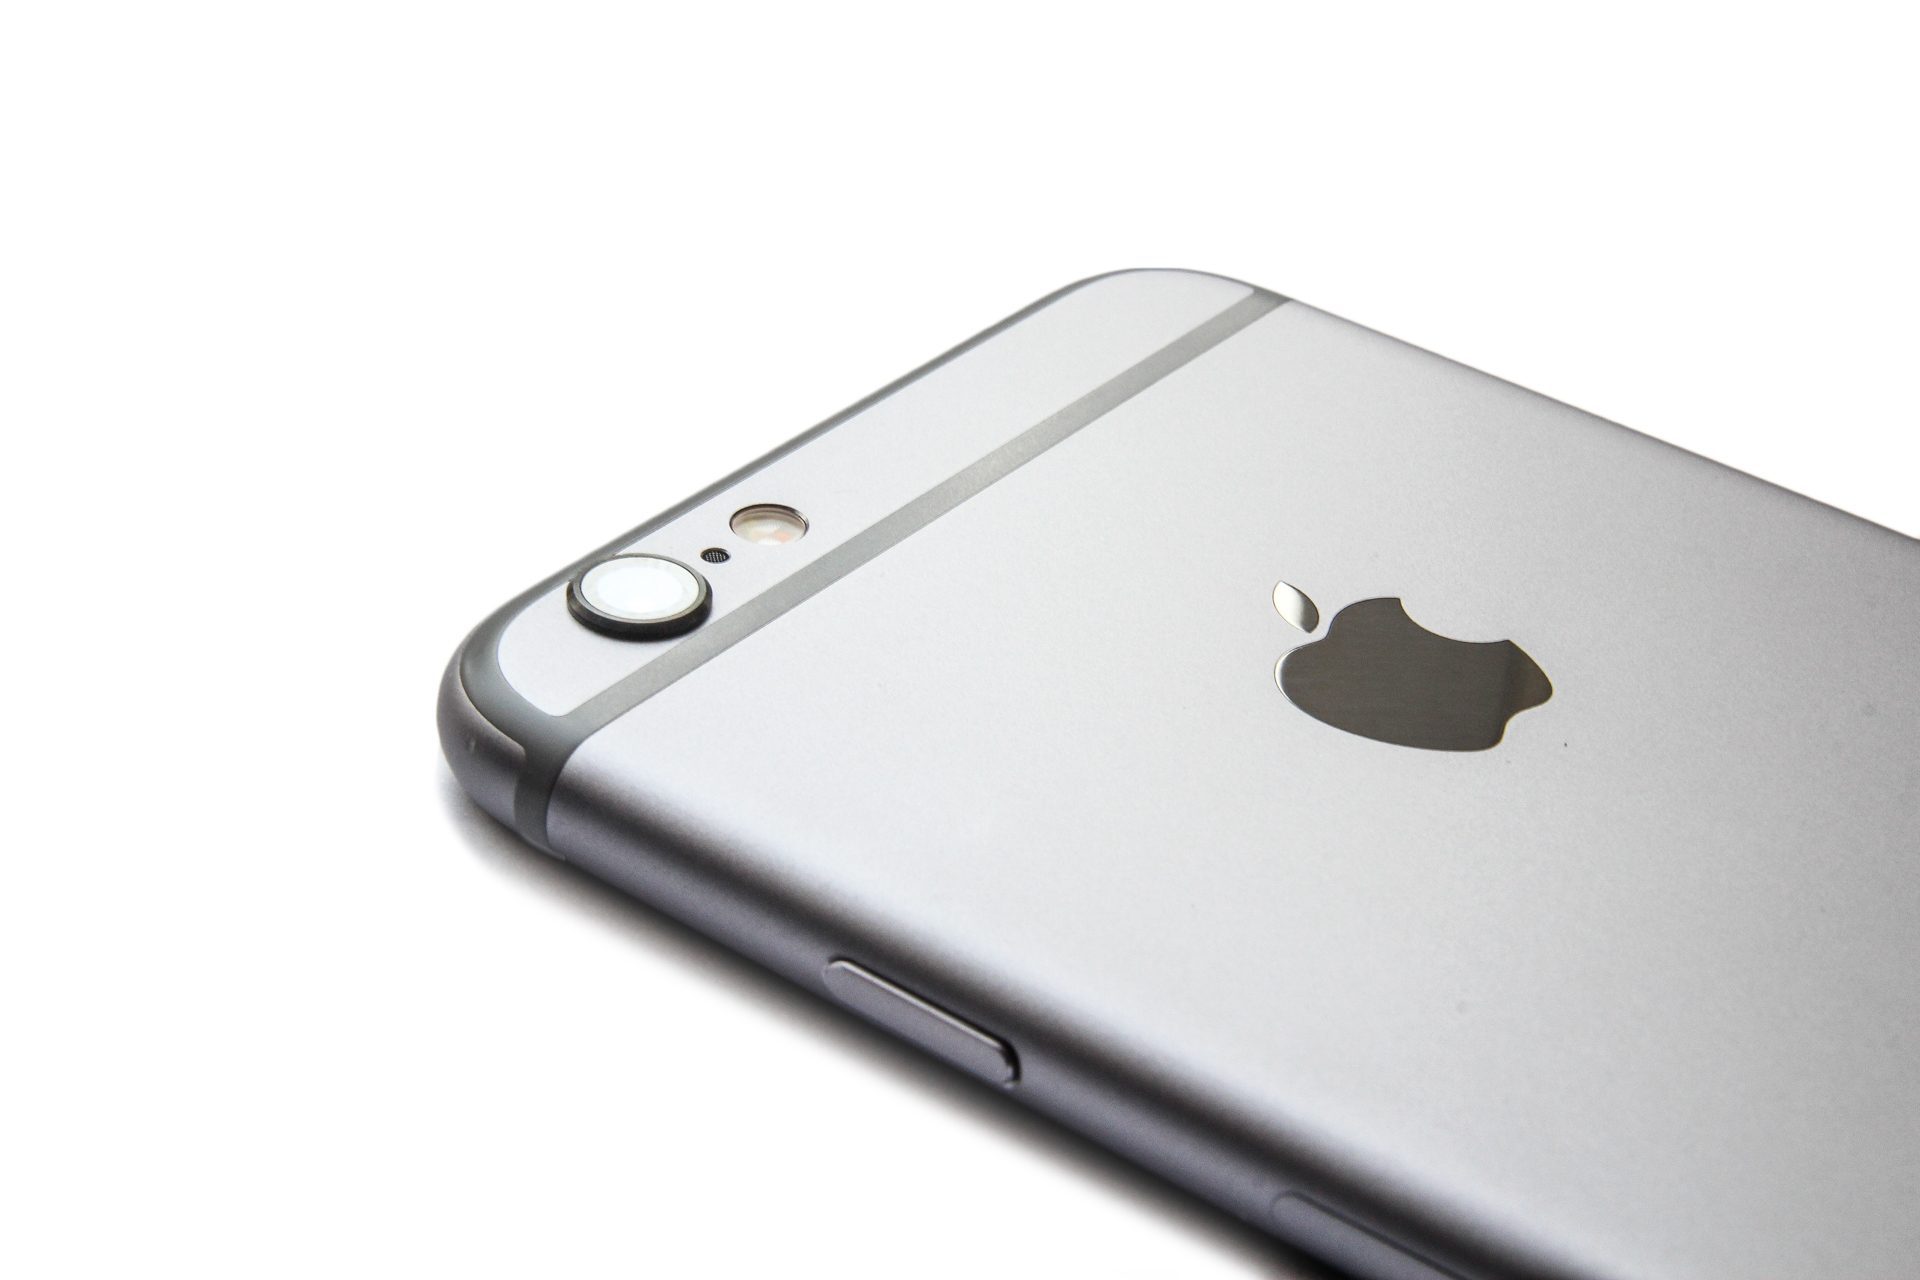 kandidaat Ga wandelen Verstrikking iPhone 6 kopen met abonnement, prijzen en aanbiedingen vergelijken